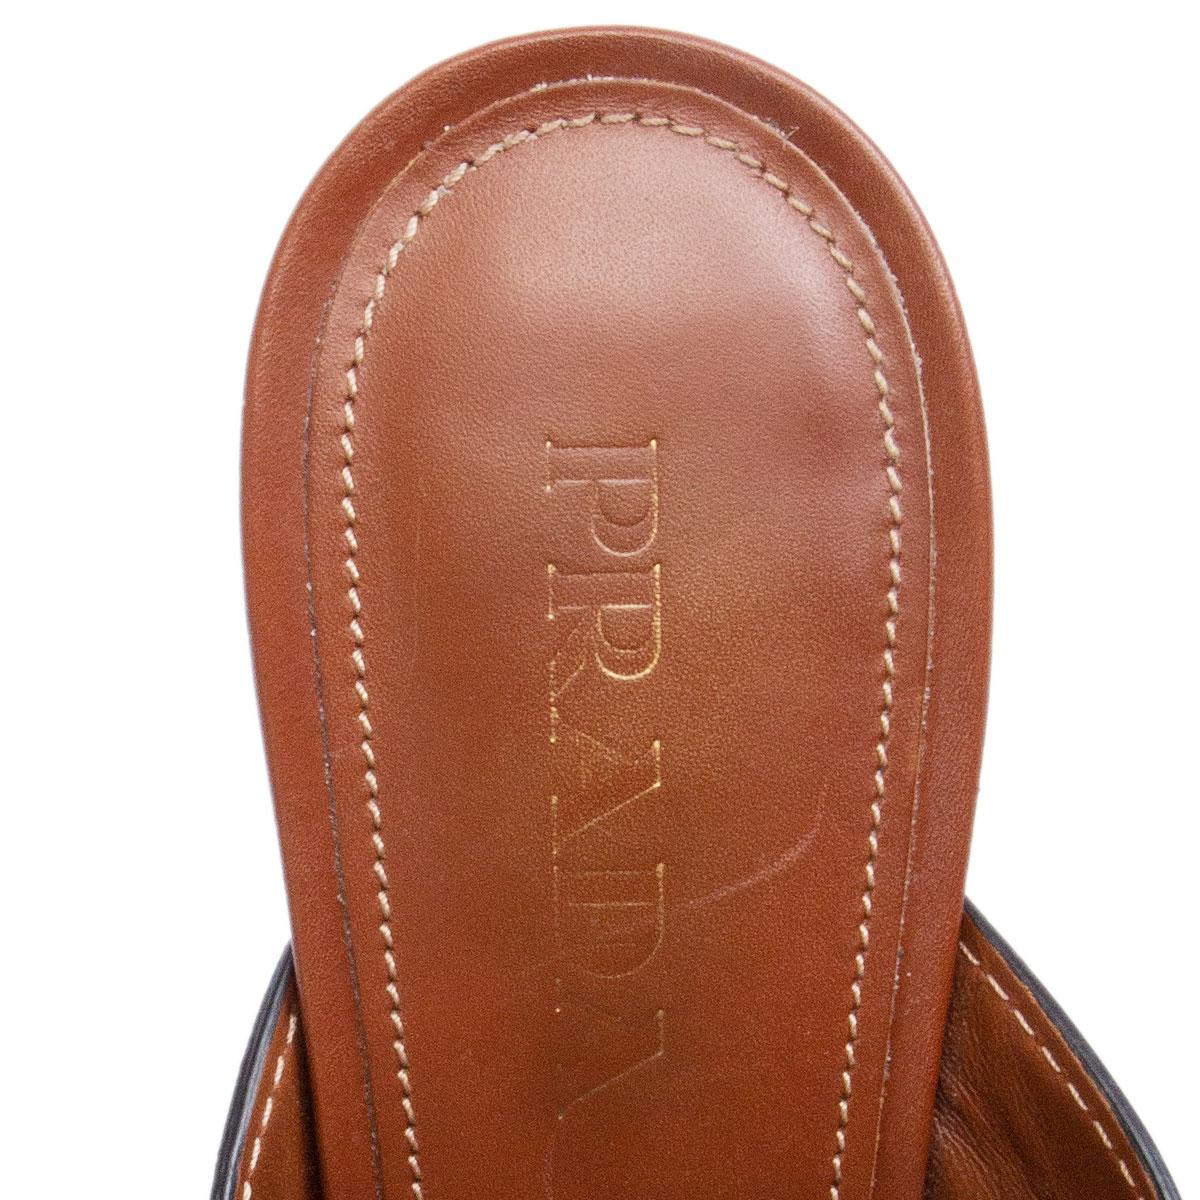 Brown PRADA cognac brown leather CRISS CROSS BLOCK HEEL Sandals Shoes 39.5